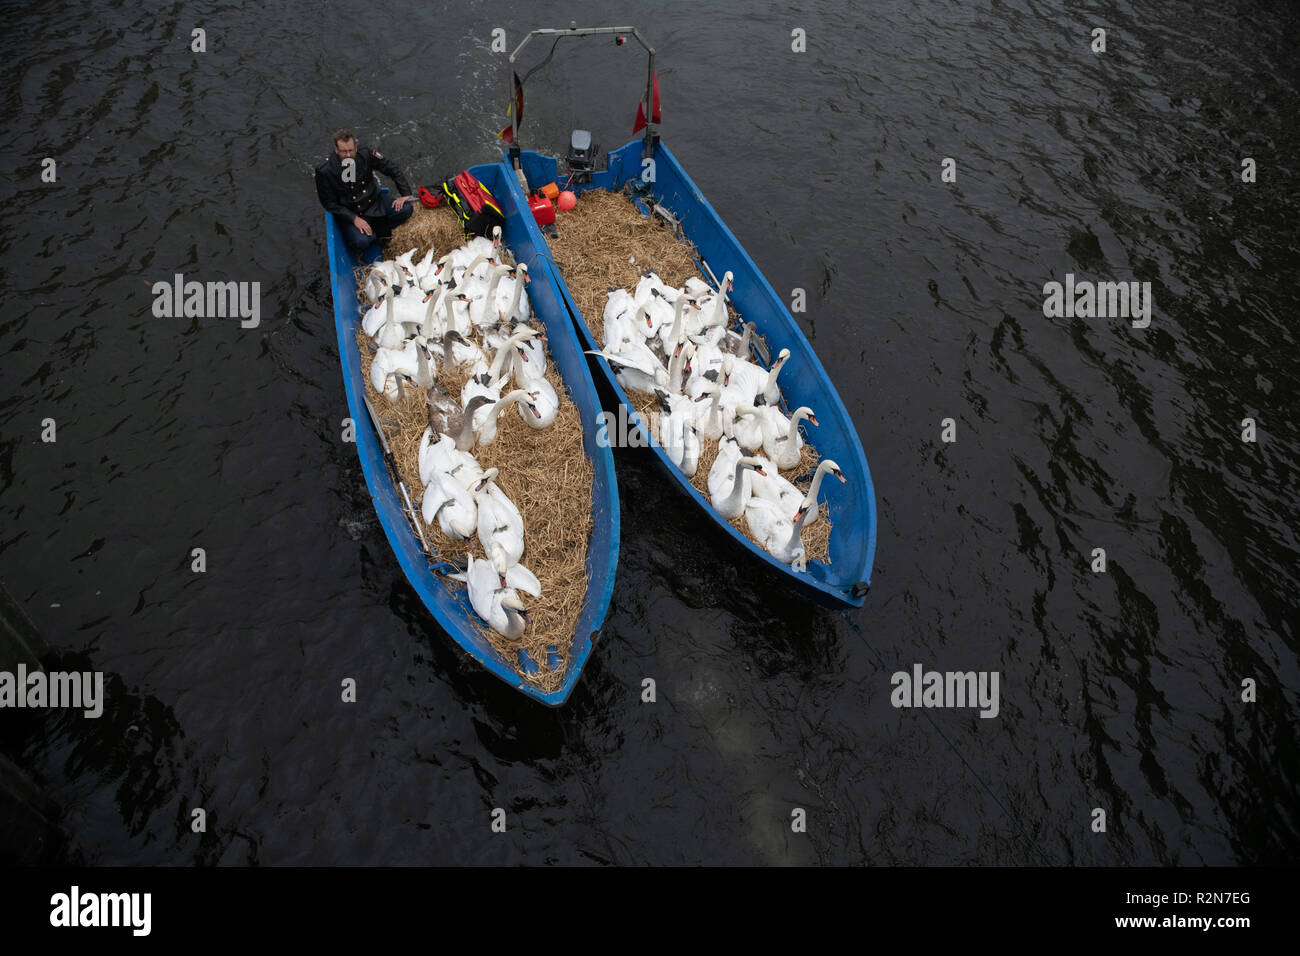 20. November 2018, Hamburg: Alster Schwäne werden von Swan gebracht - Vater Olaf Nieß mit Booten in die Winter-Viertel. Foto: Daniel Reinhardt/dpa Stockfoto